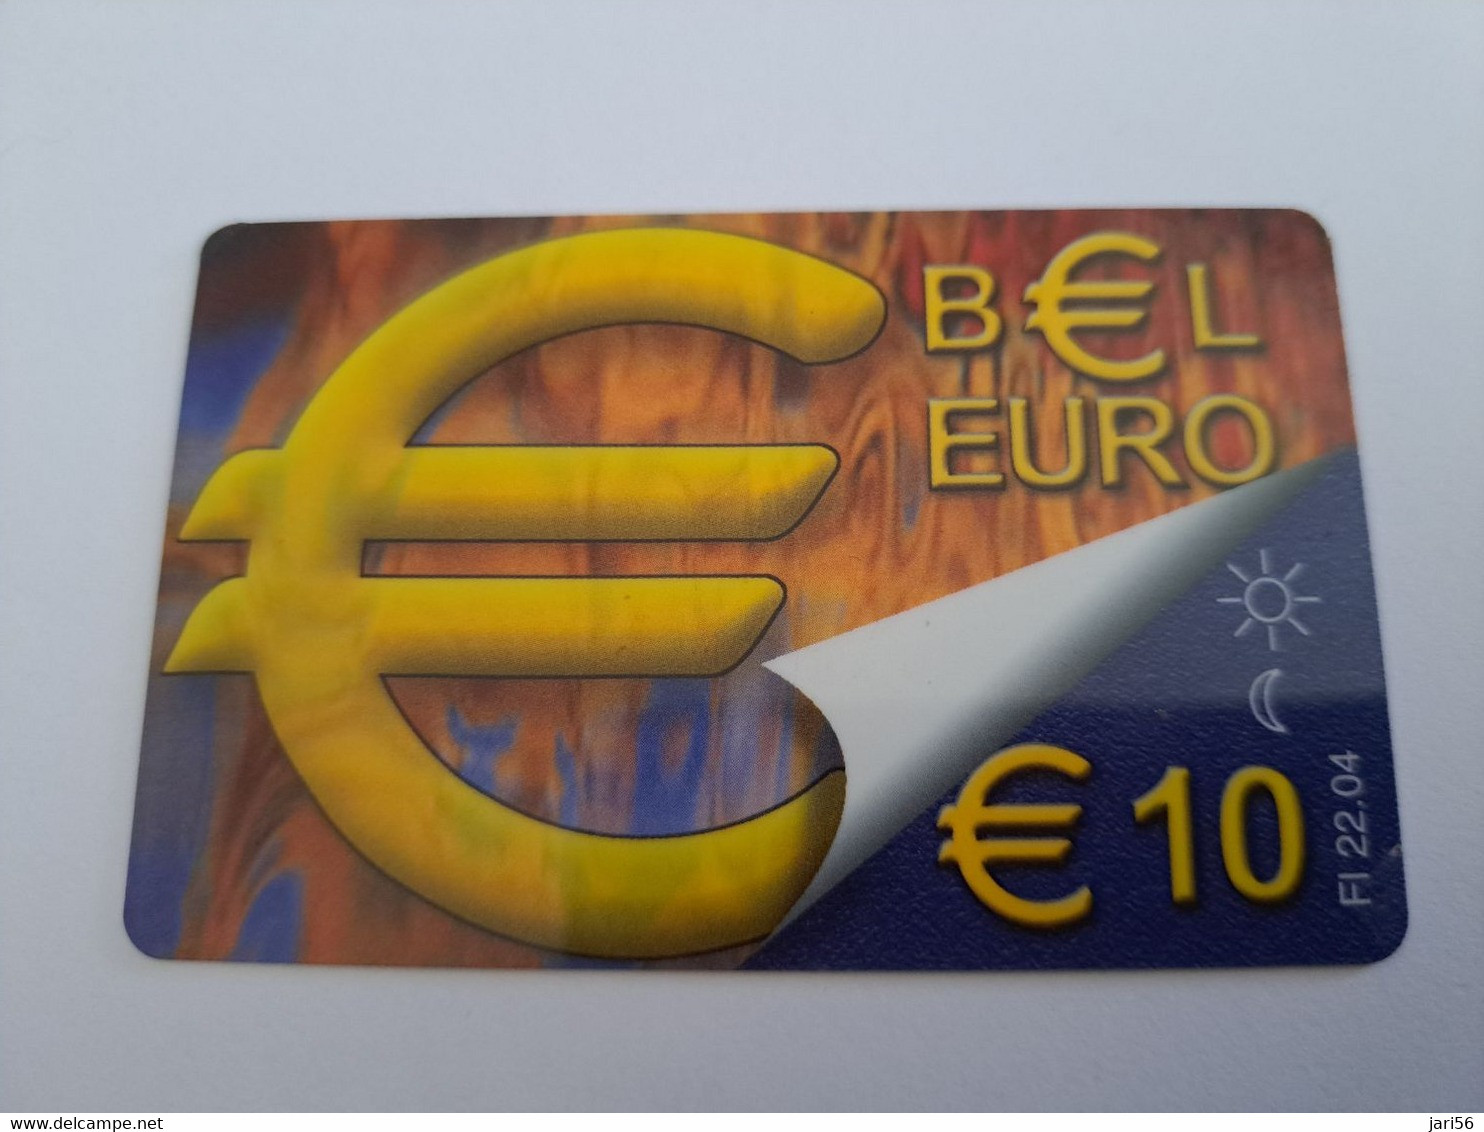 NETHERLANDS  /  € 10,- BEL EURO          / OLDER CARD    PREPAID  Nice USED   ** 11226** - Cartes GSM, Prépayées Et Recharges